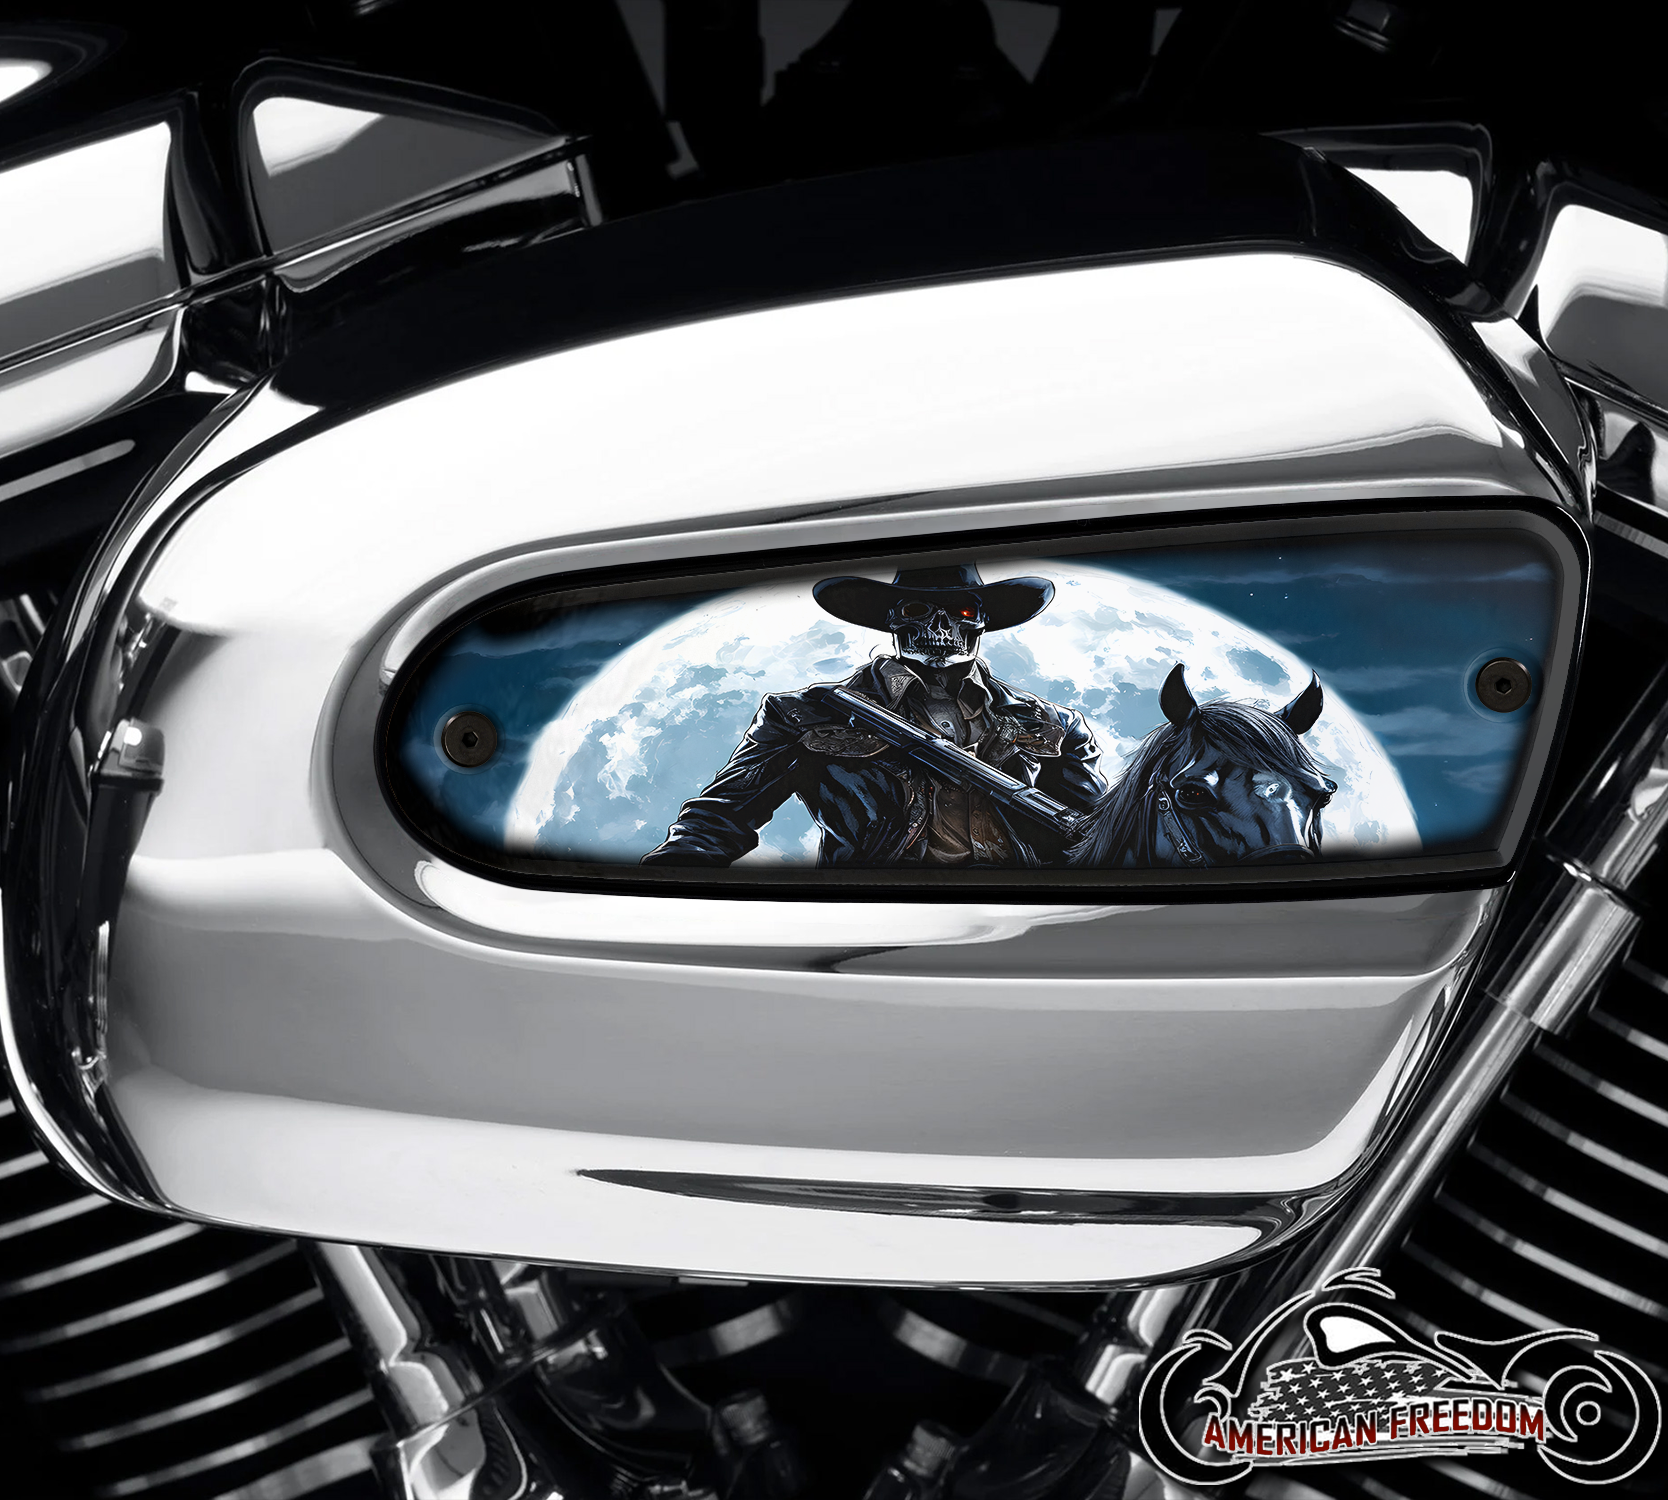 Harley Davidson Wedge Air Cleaner Insert - Undead Rider